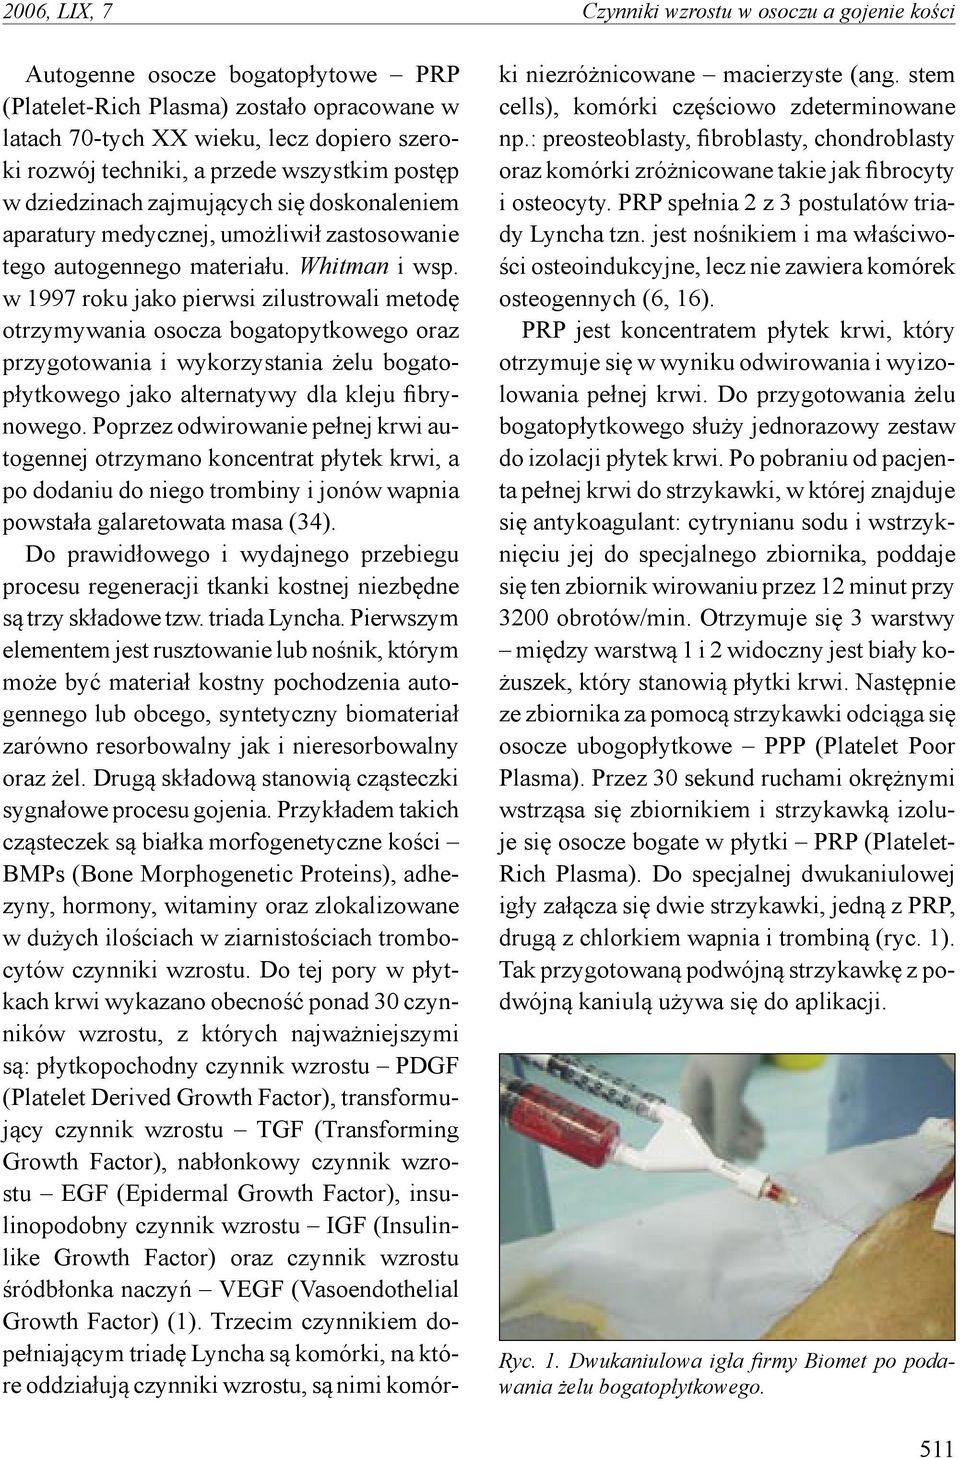 w 1997 roku jako pierwsi zilustrowali metodę otrzymywania osocza bogatopytkowego oraz przygotowania i wykorzystania żelu bogatopłytkowego jako alternatywy dla kleju fibrynowego.